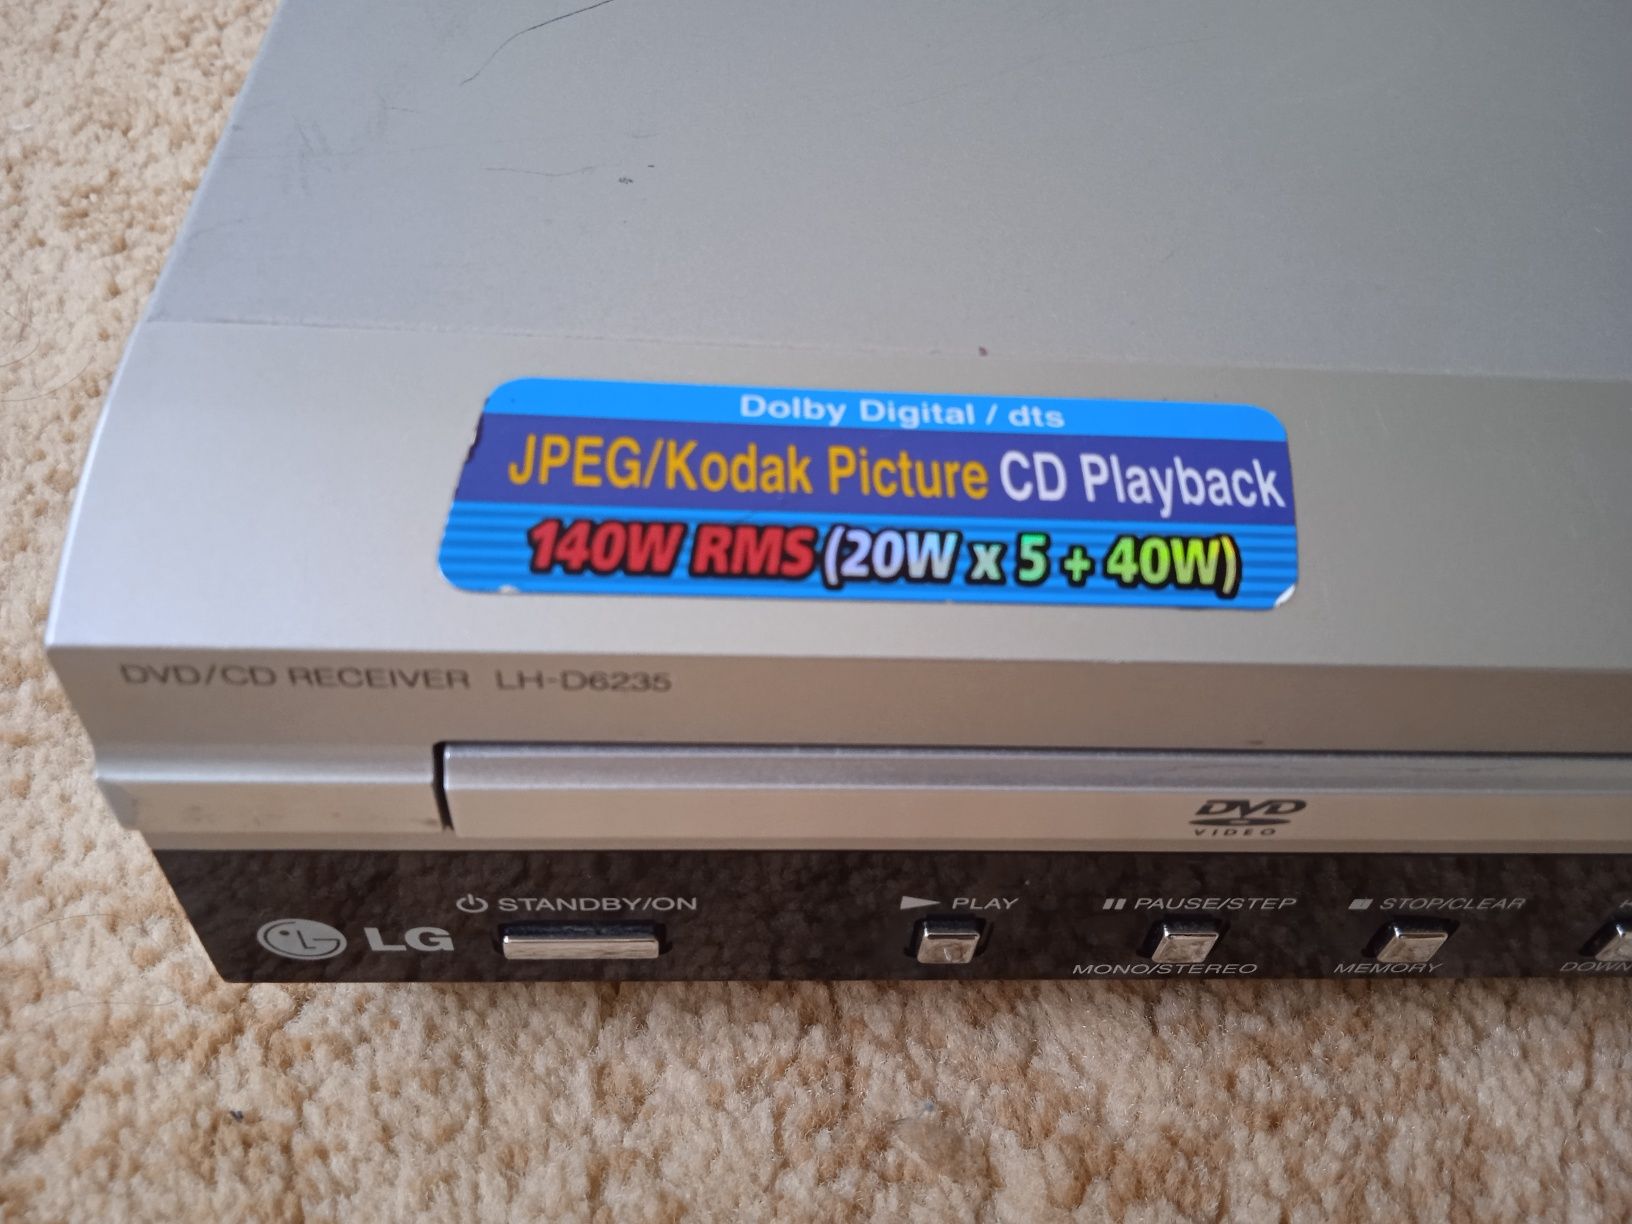 DVD cd receiver lh-d6235